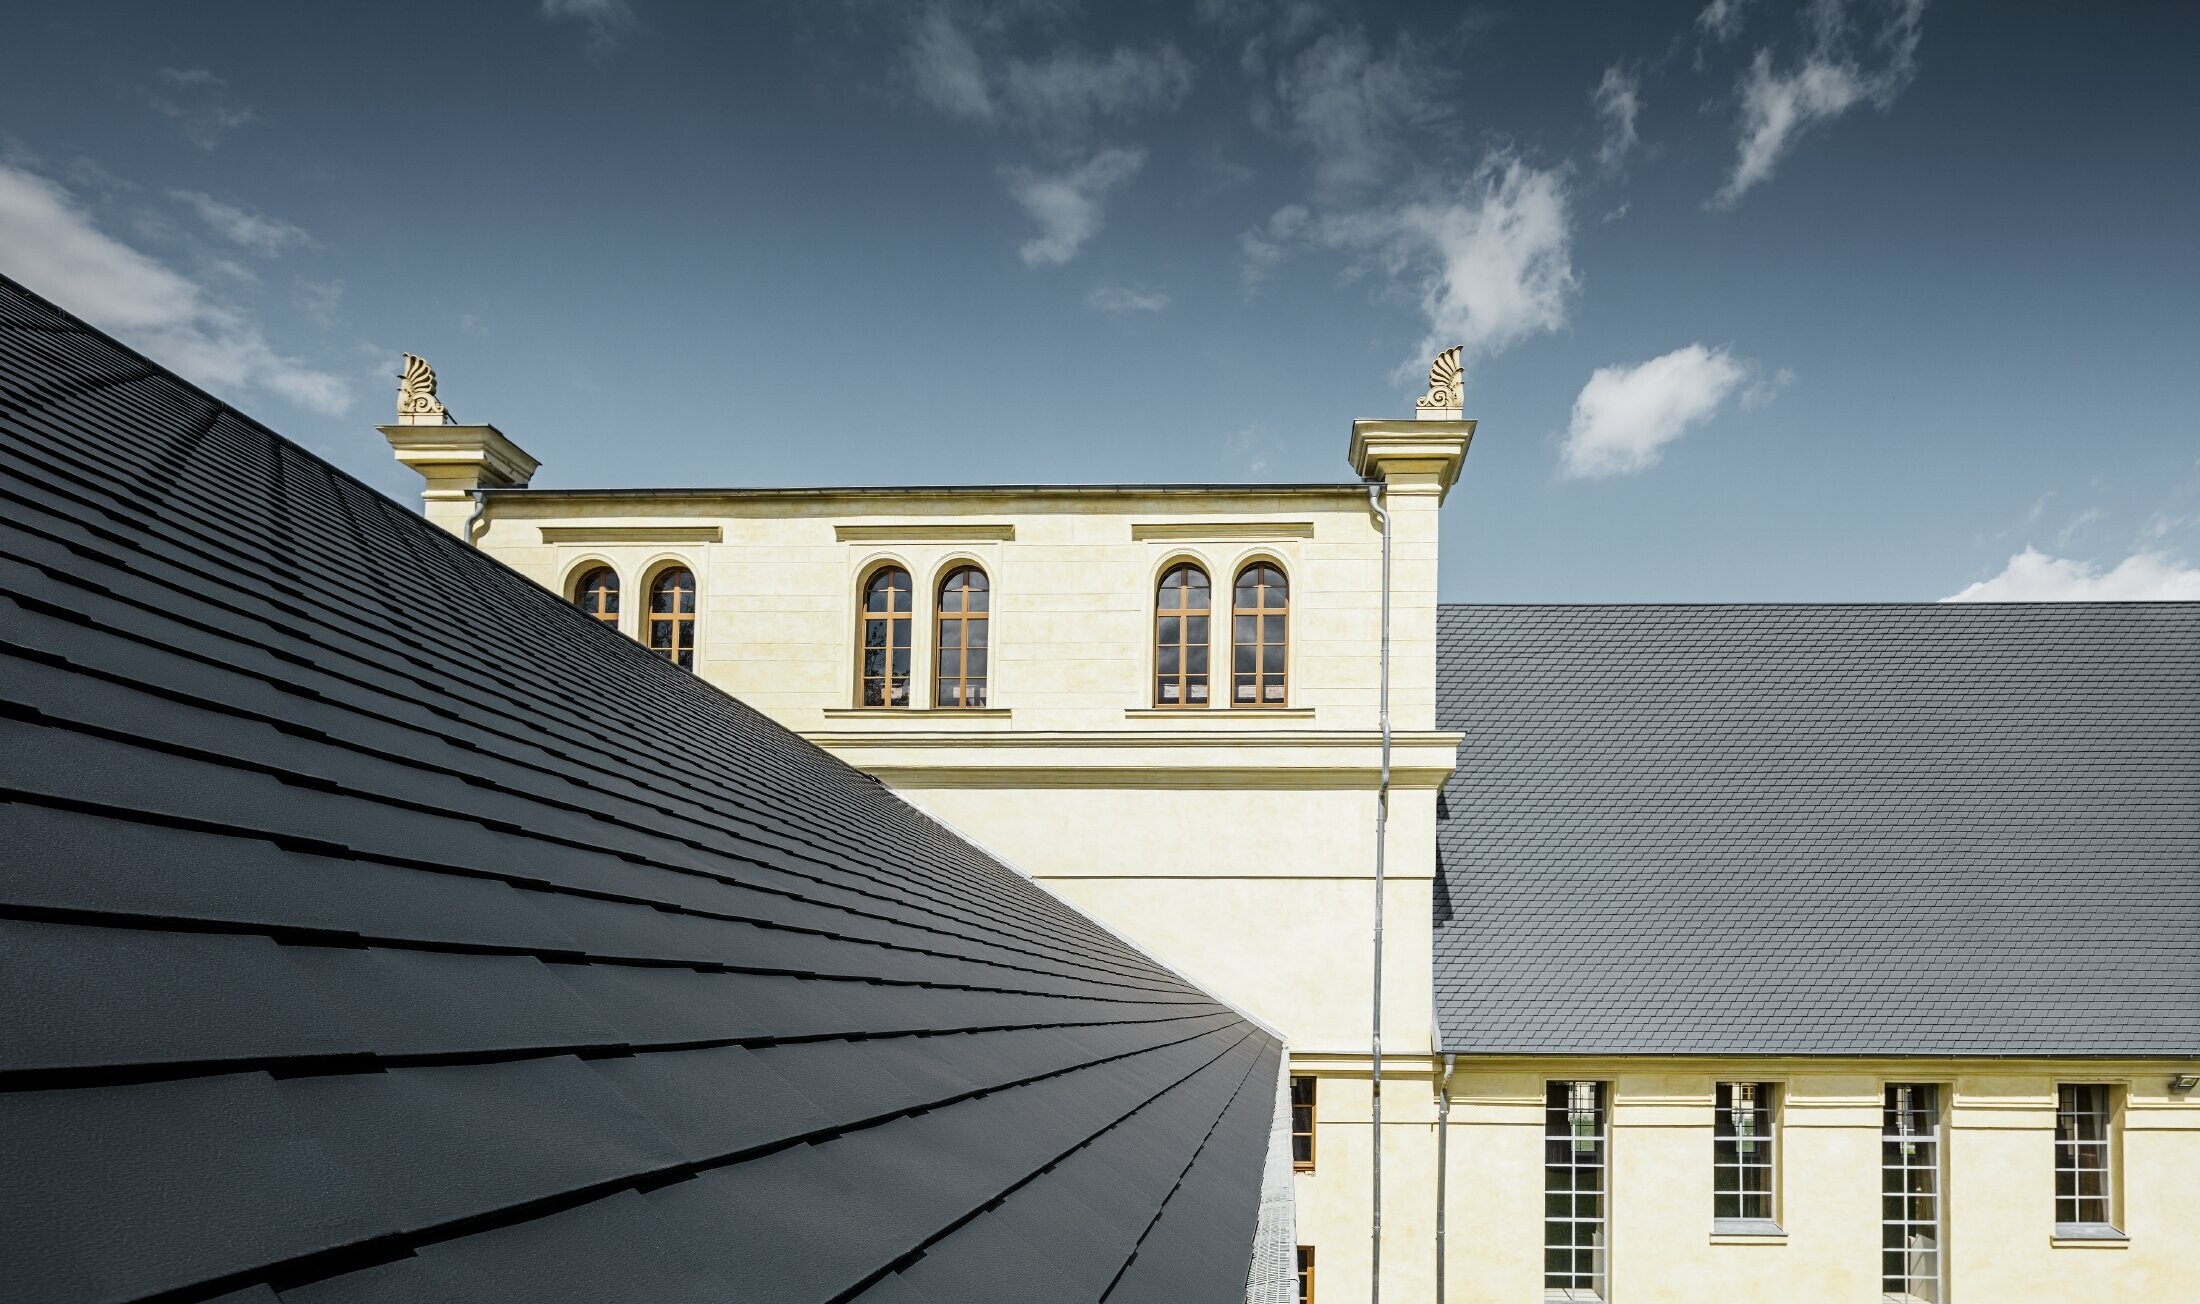 Detailfoto van het nieuwe dak van de Marstall in Basedow; het dak werd gerenoveerd met PREFA dakschindels in antraciet.